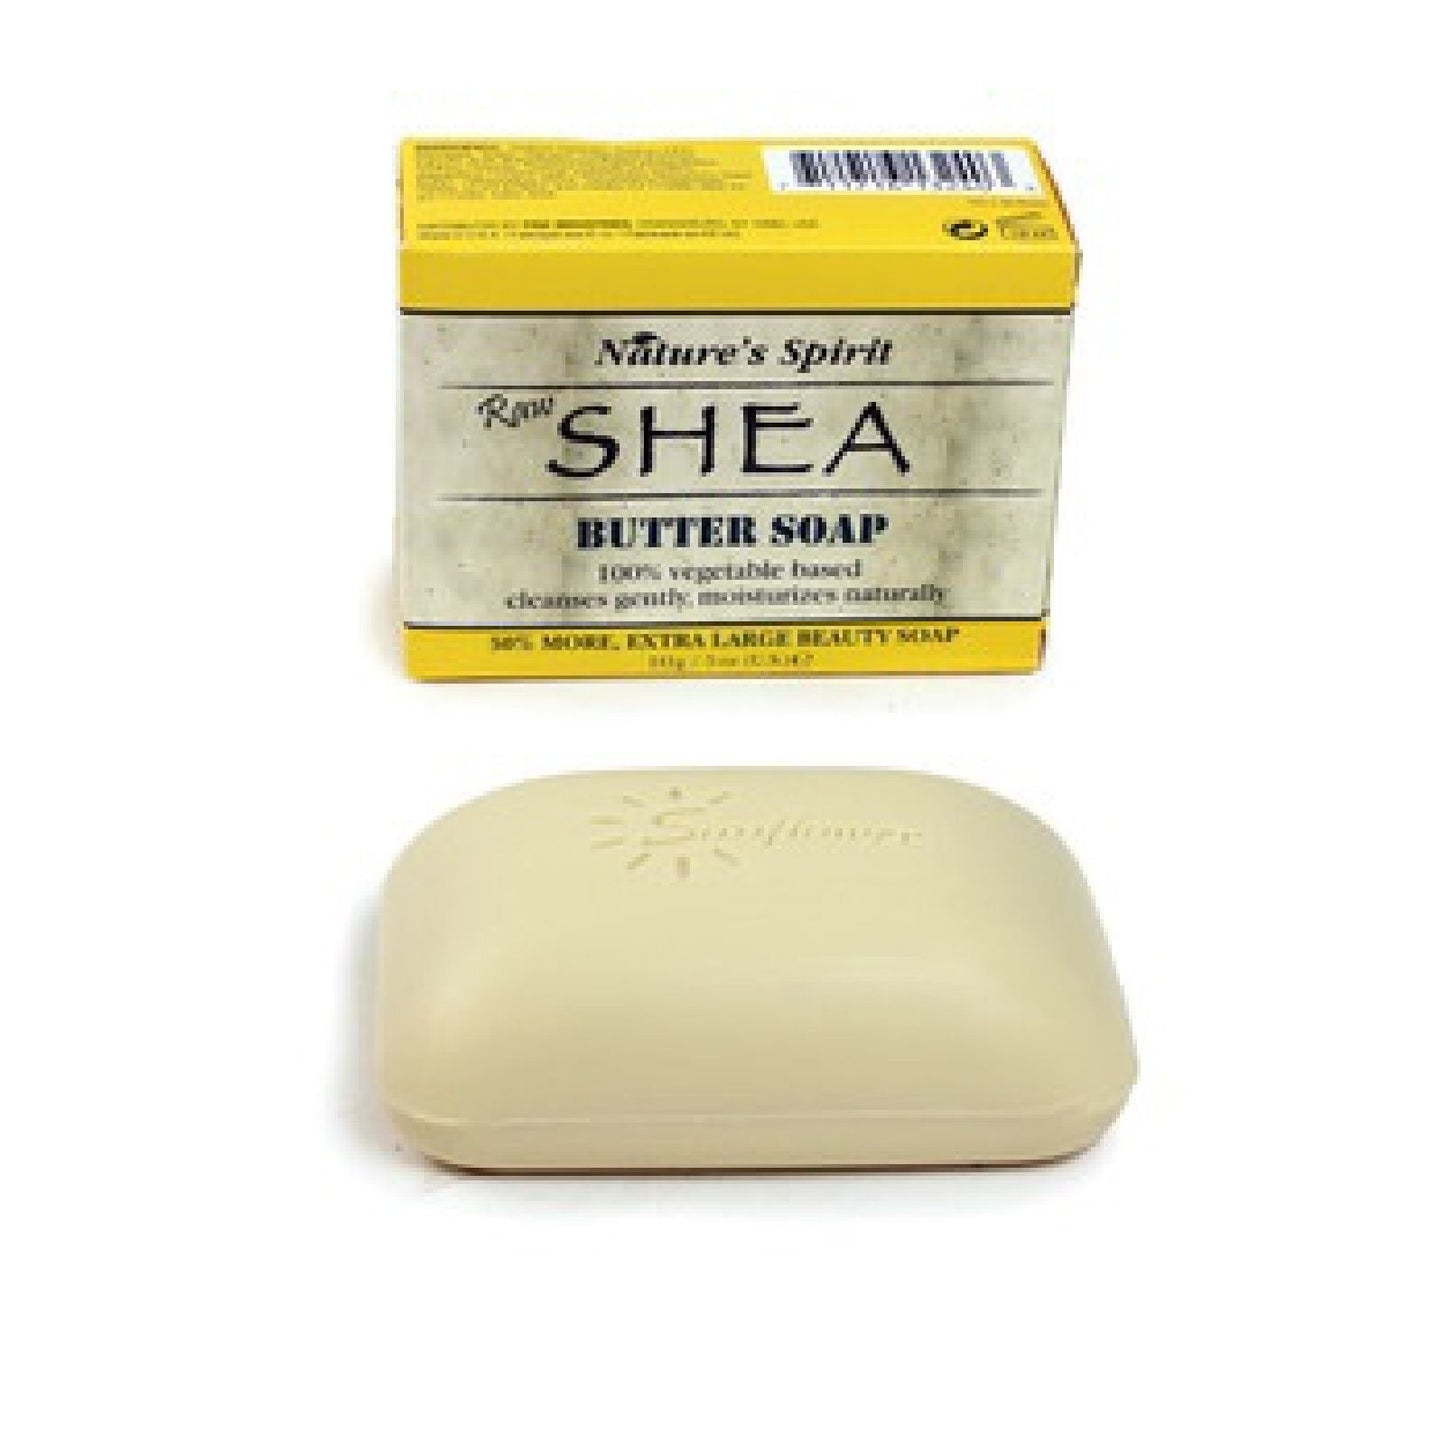 Shea Butter Soap - 5 oz